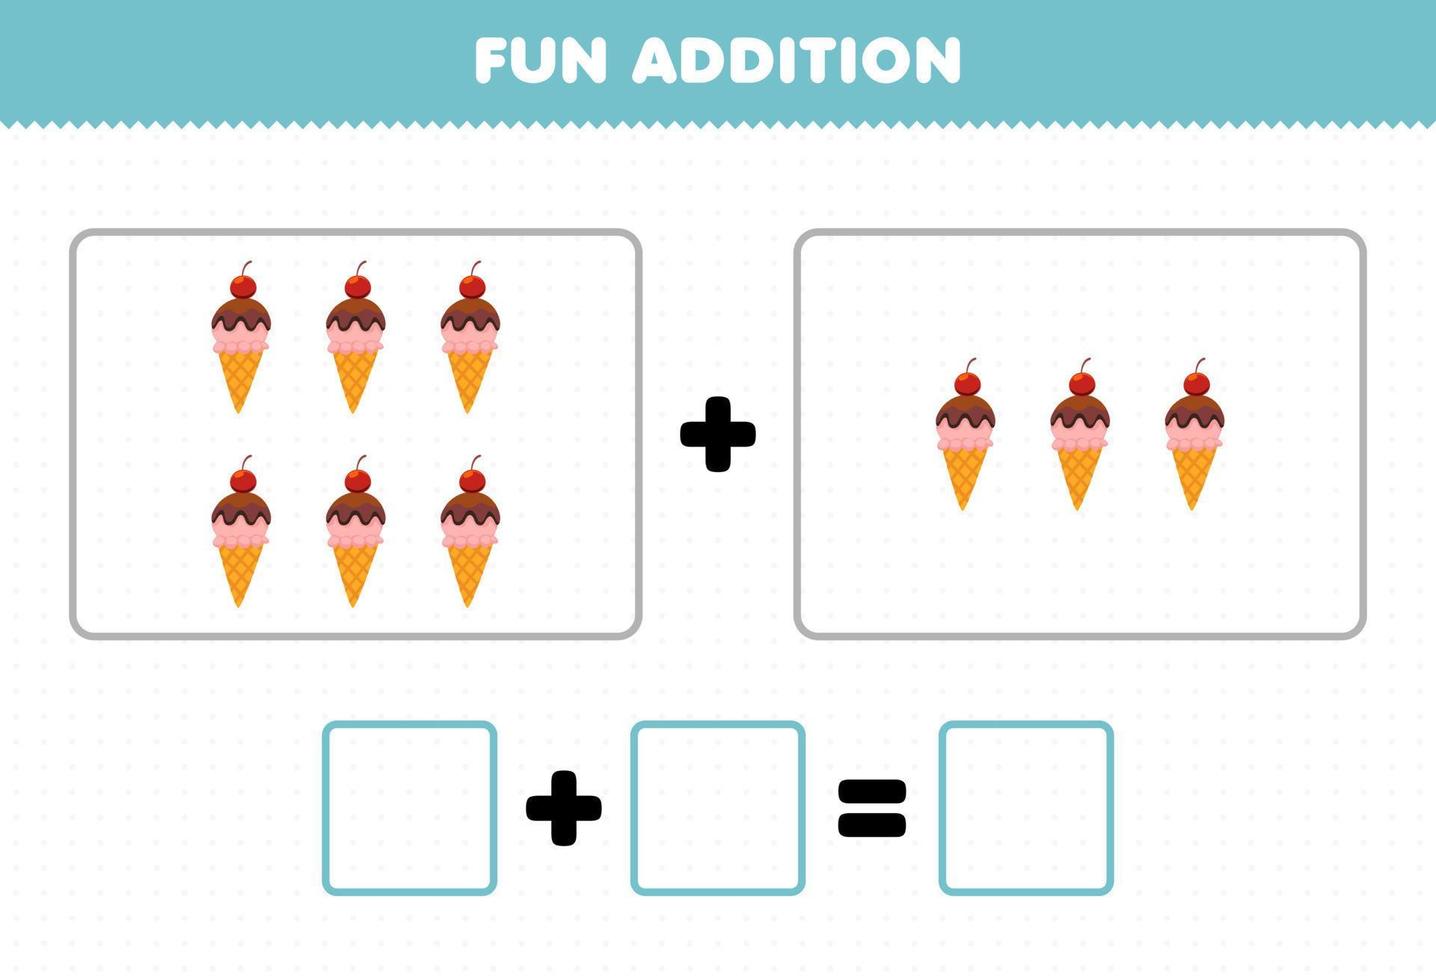 jeu éducatif pour les enfants ajout amusant en comptant la feuille de calcul des images de crème glacée de nourriture de dessin animé vecteur